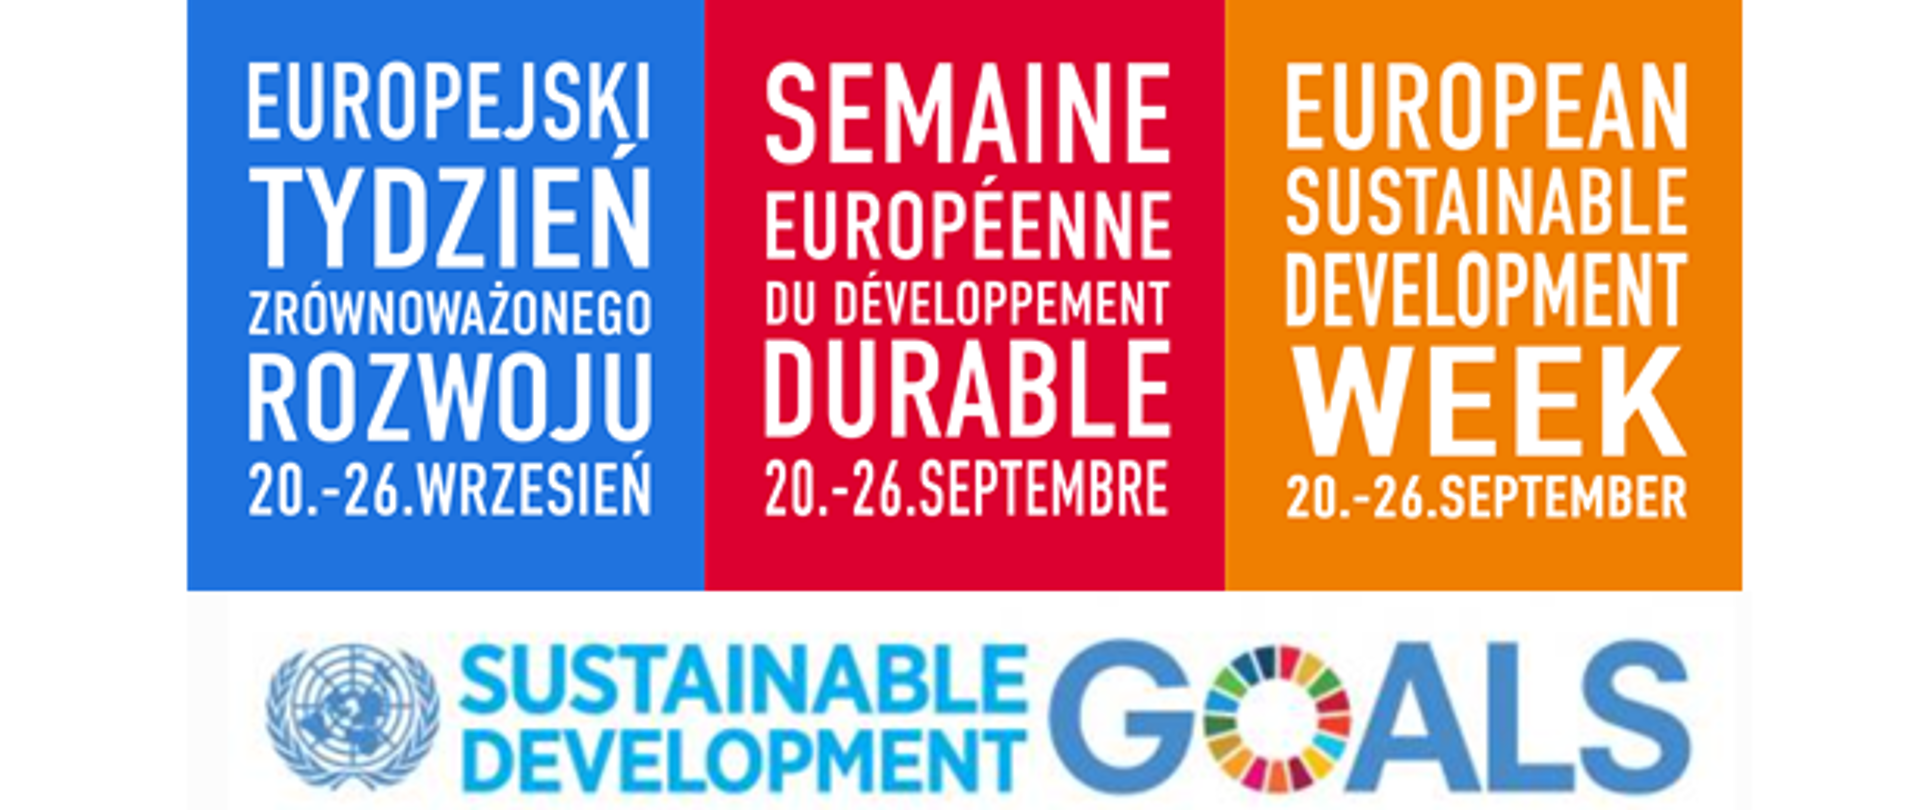 Napis Europejski Tydzień Zrównoważonego Rozwoju 20-26 wrzesień w języku polskim, francuskim i angielskim